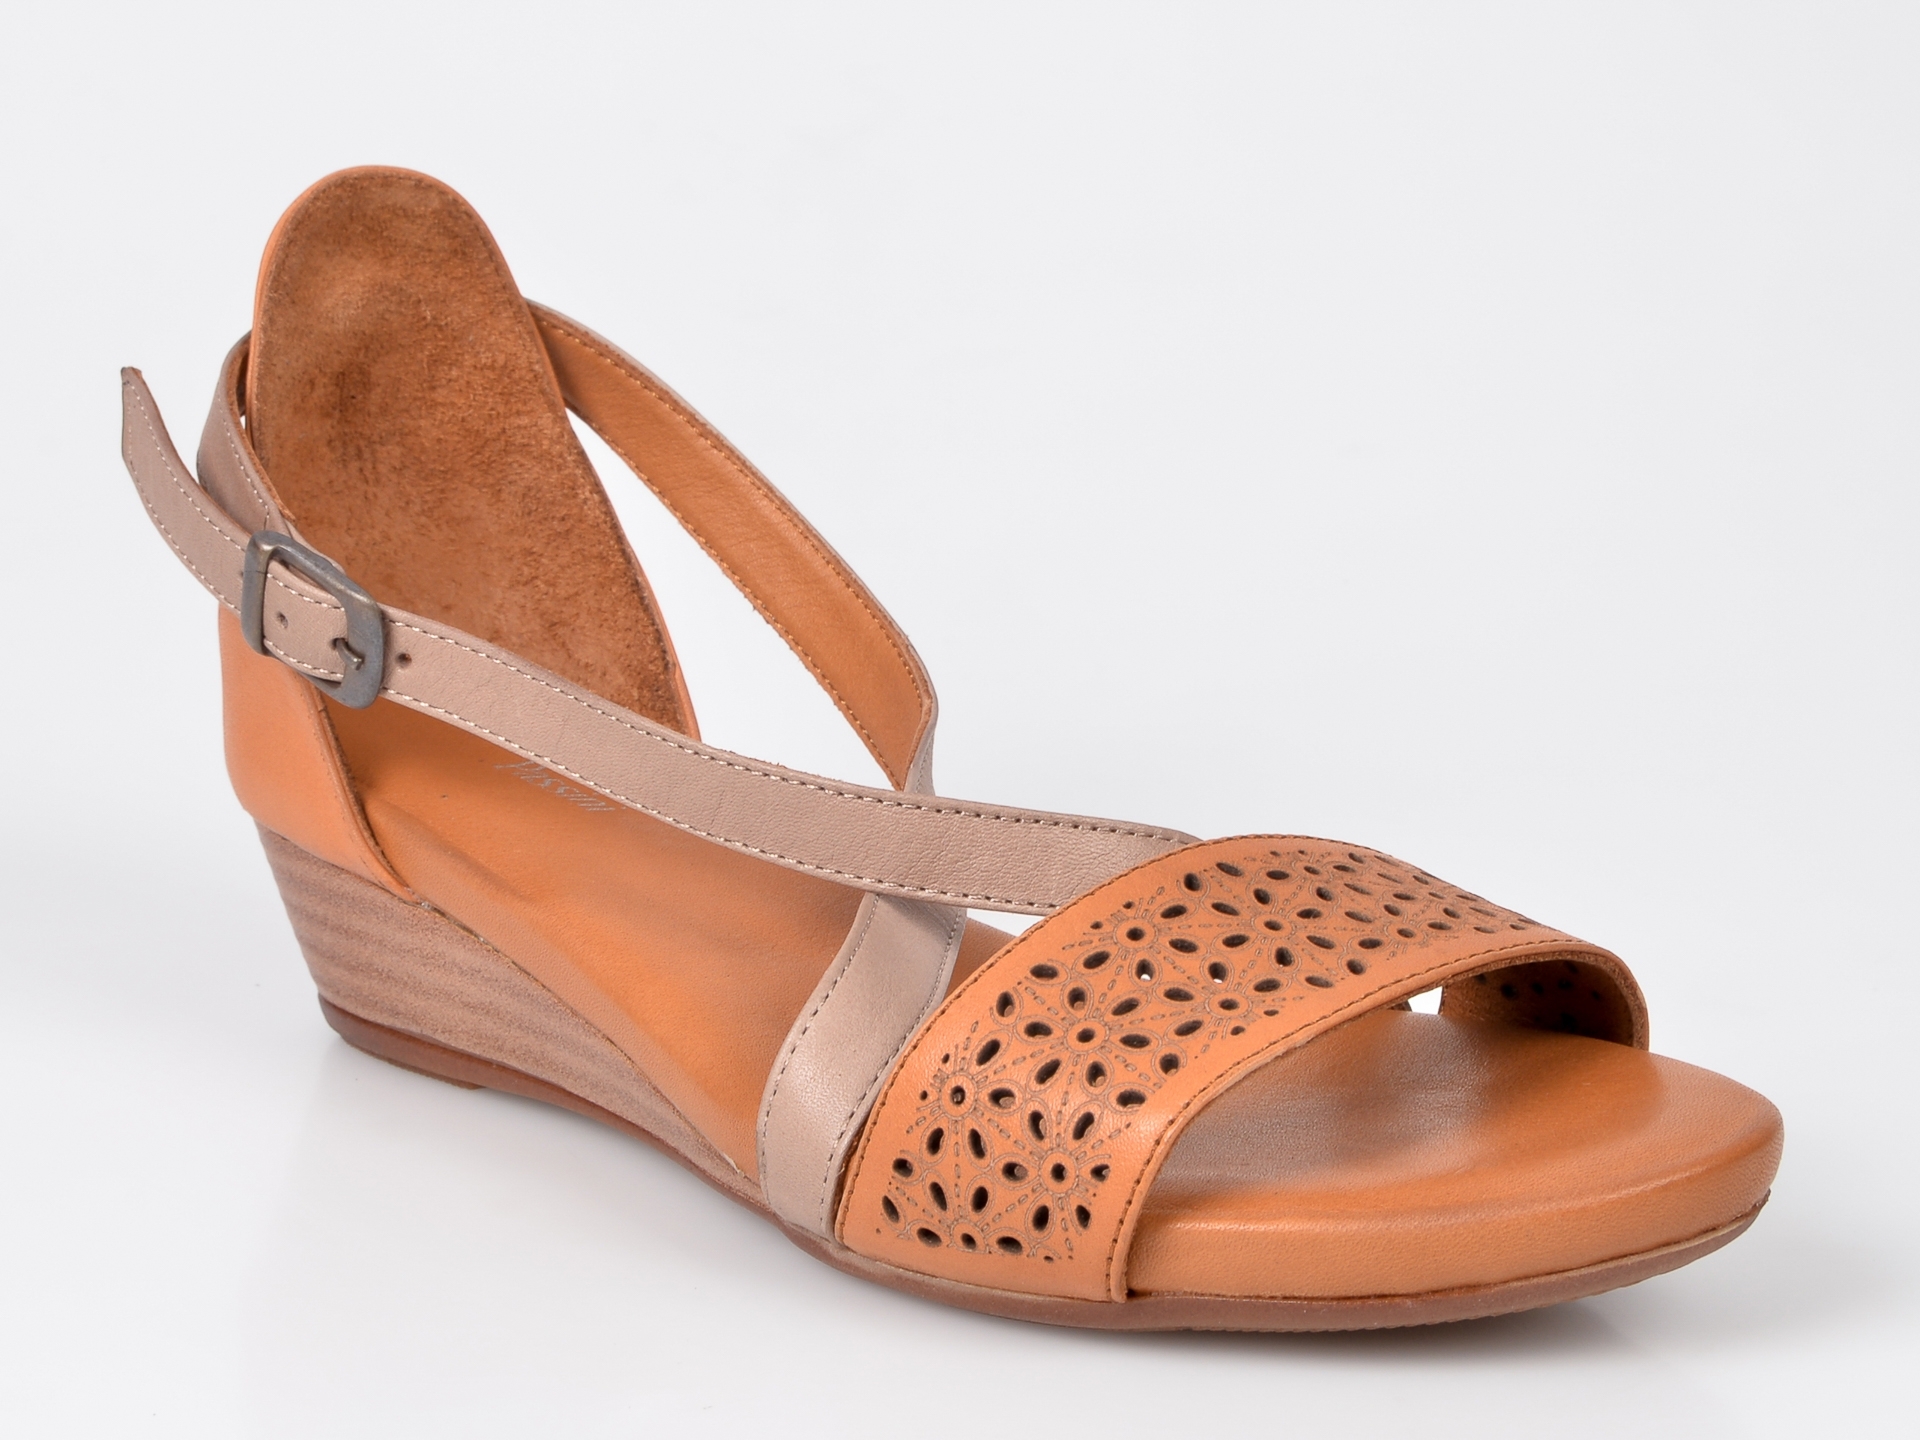 Sandale FLAVIA PASSINI maro, din piele naturala Flavia Passini imagine noua